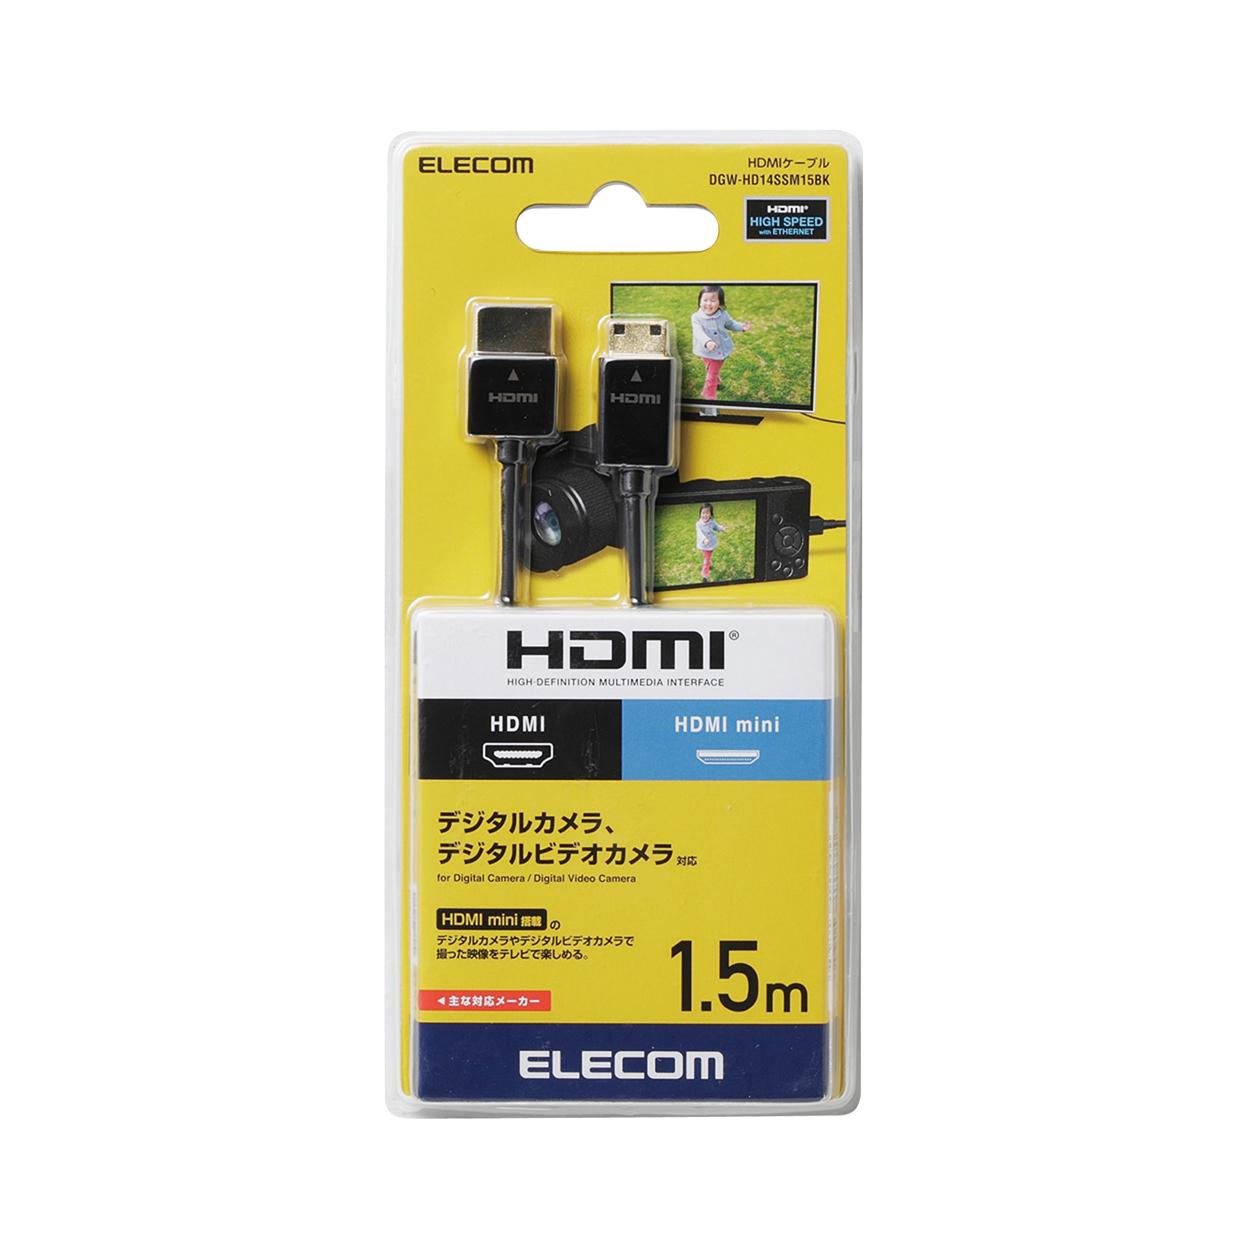 カメラ接続用HDMIケーブル(HDMI miniタイプ) | エレコムダイレクト